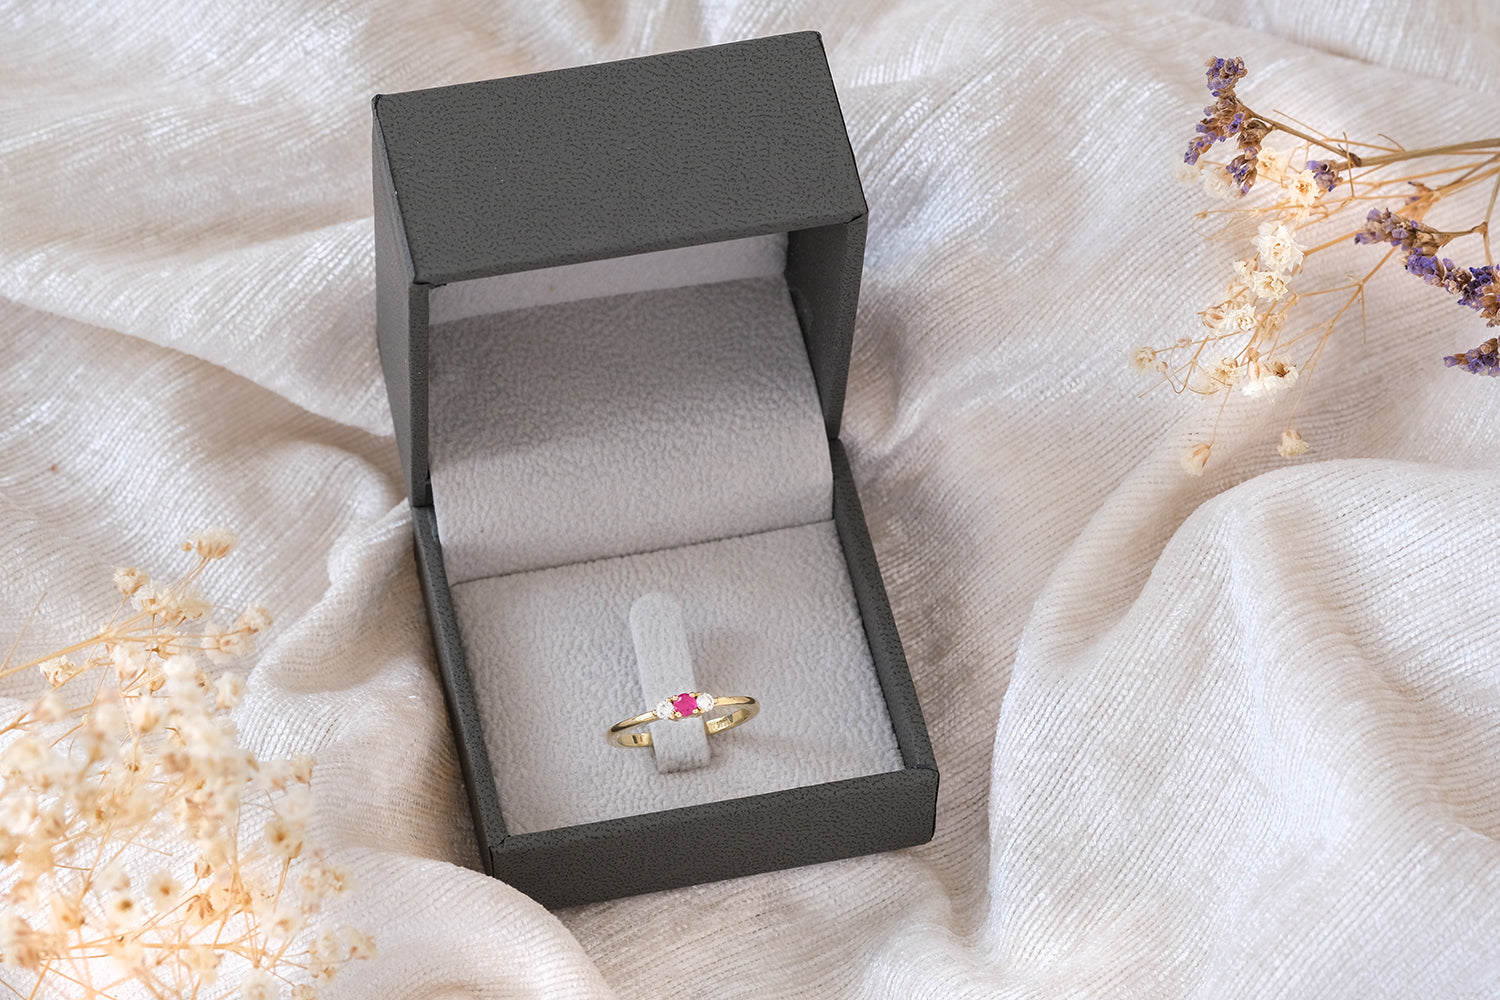 טבעת אירוסין זהב משובצת אבן רובי ושני יהלומים